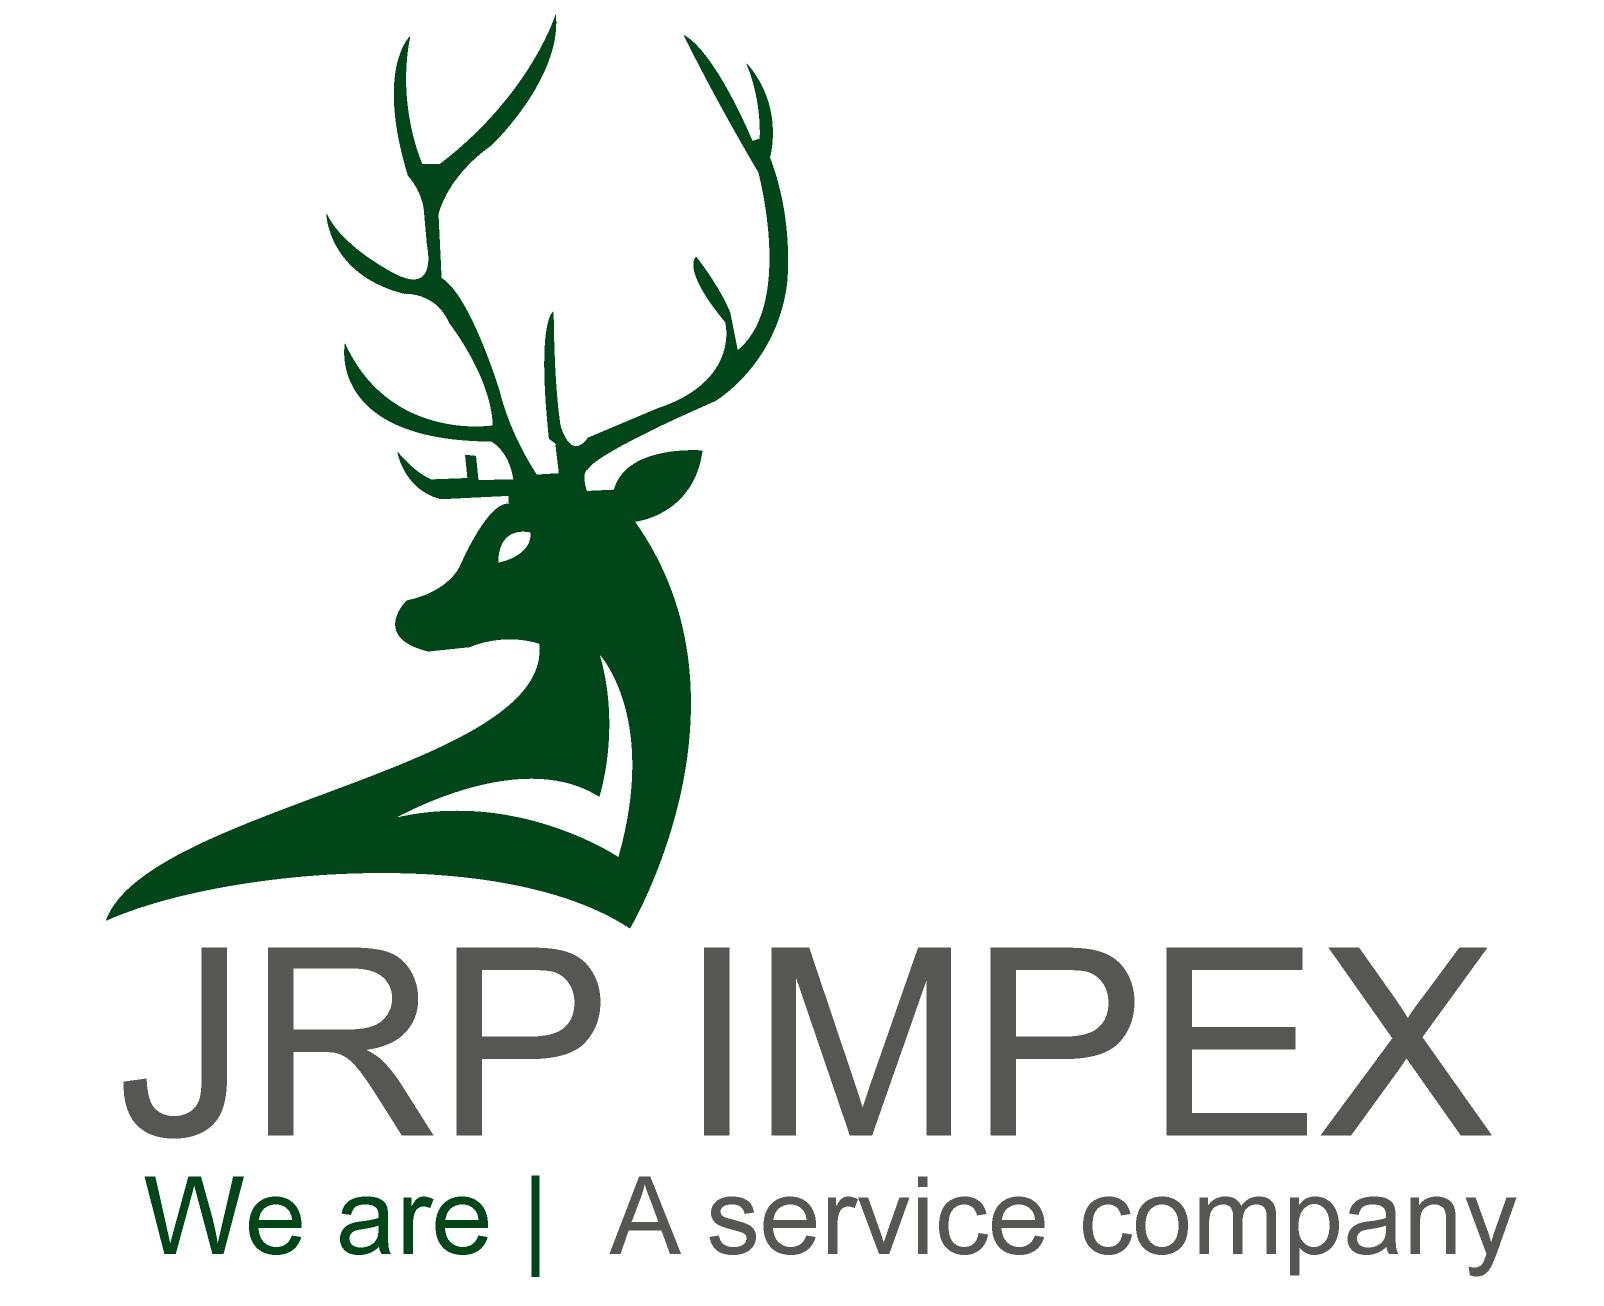 JRP Impex